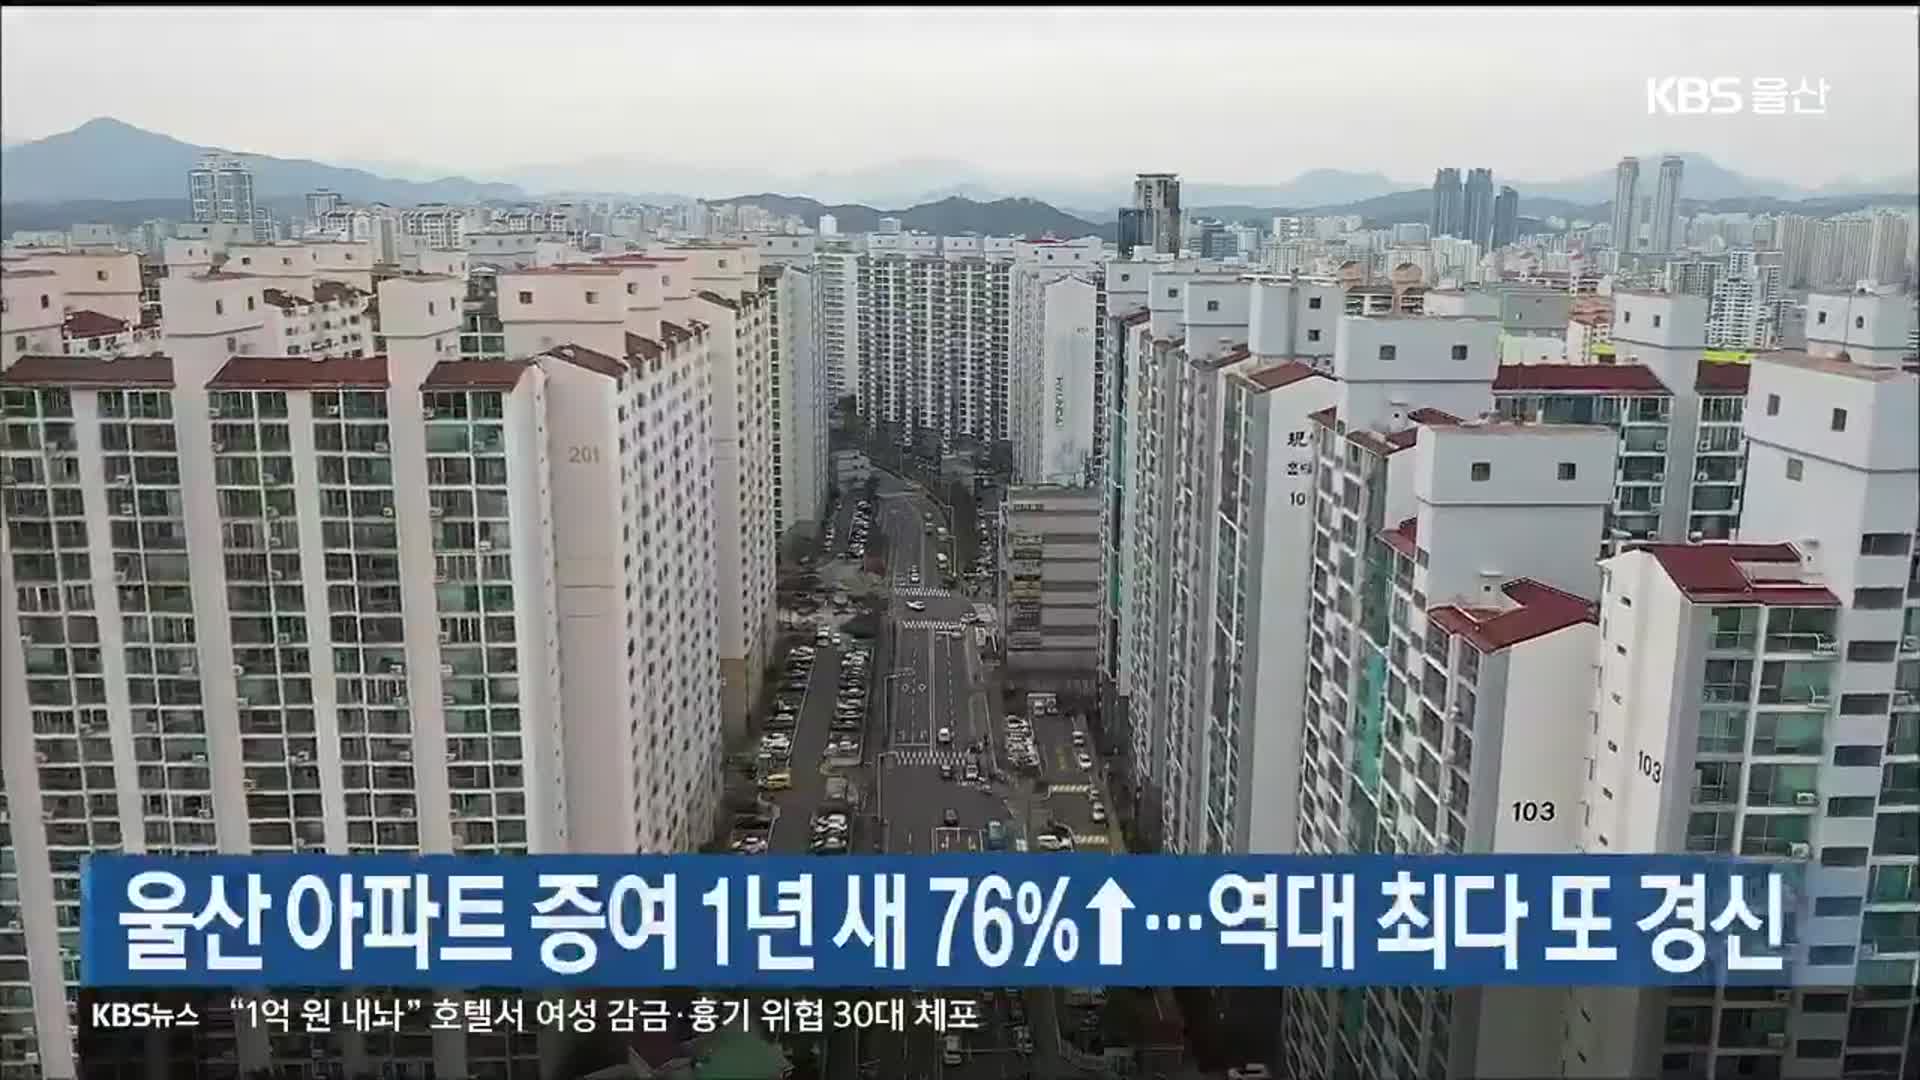 울산 아파트 증여 1년 새 76%↑…역대 최다 또 경신